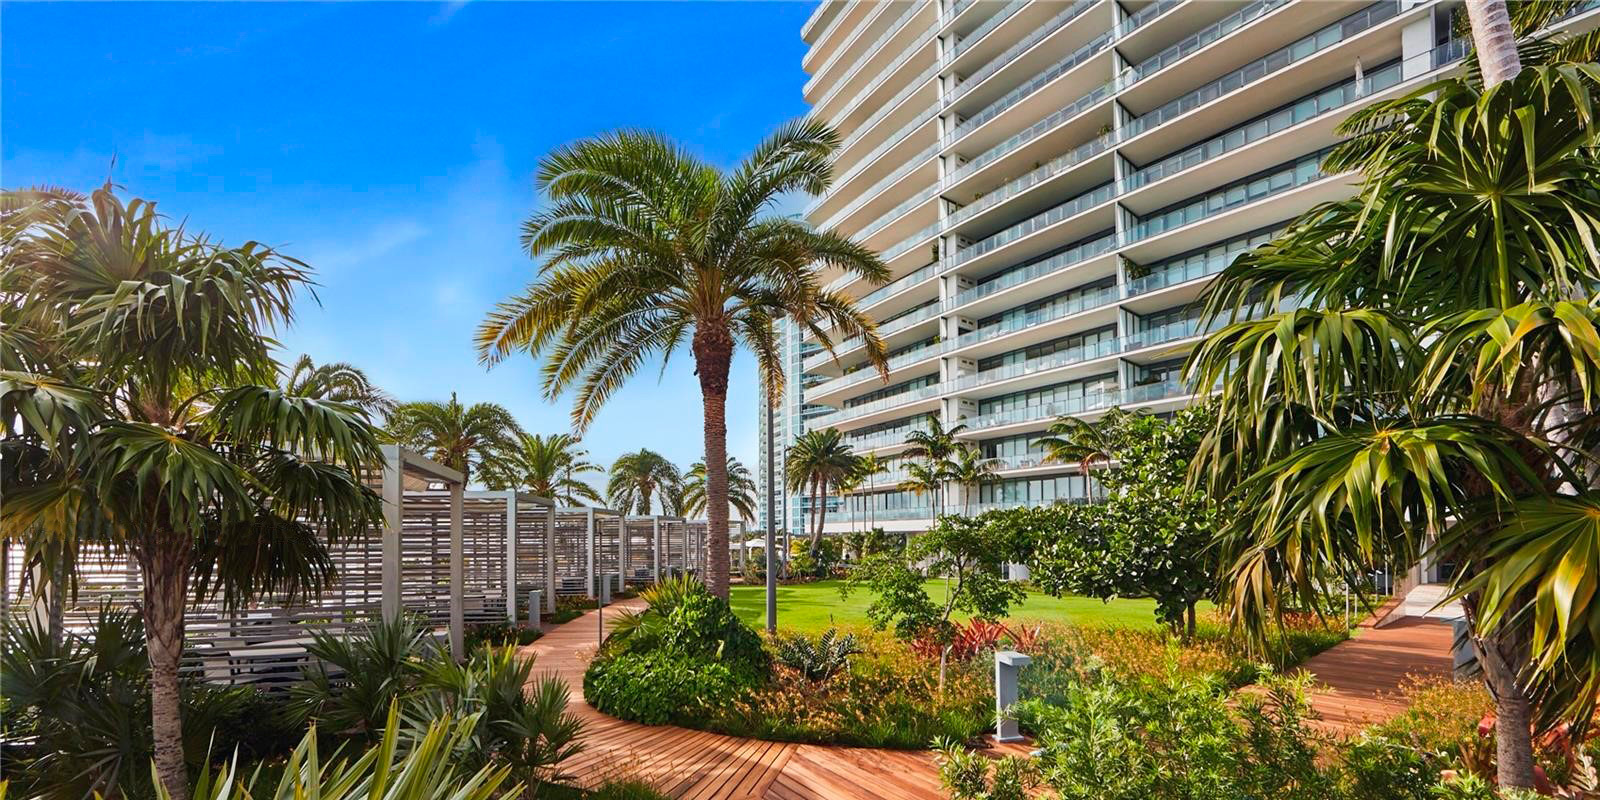 Tropical Garden - Apogee Condominium - South Beach, Miami, Florida